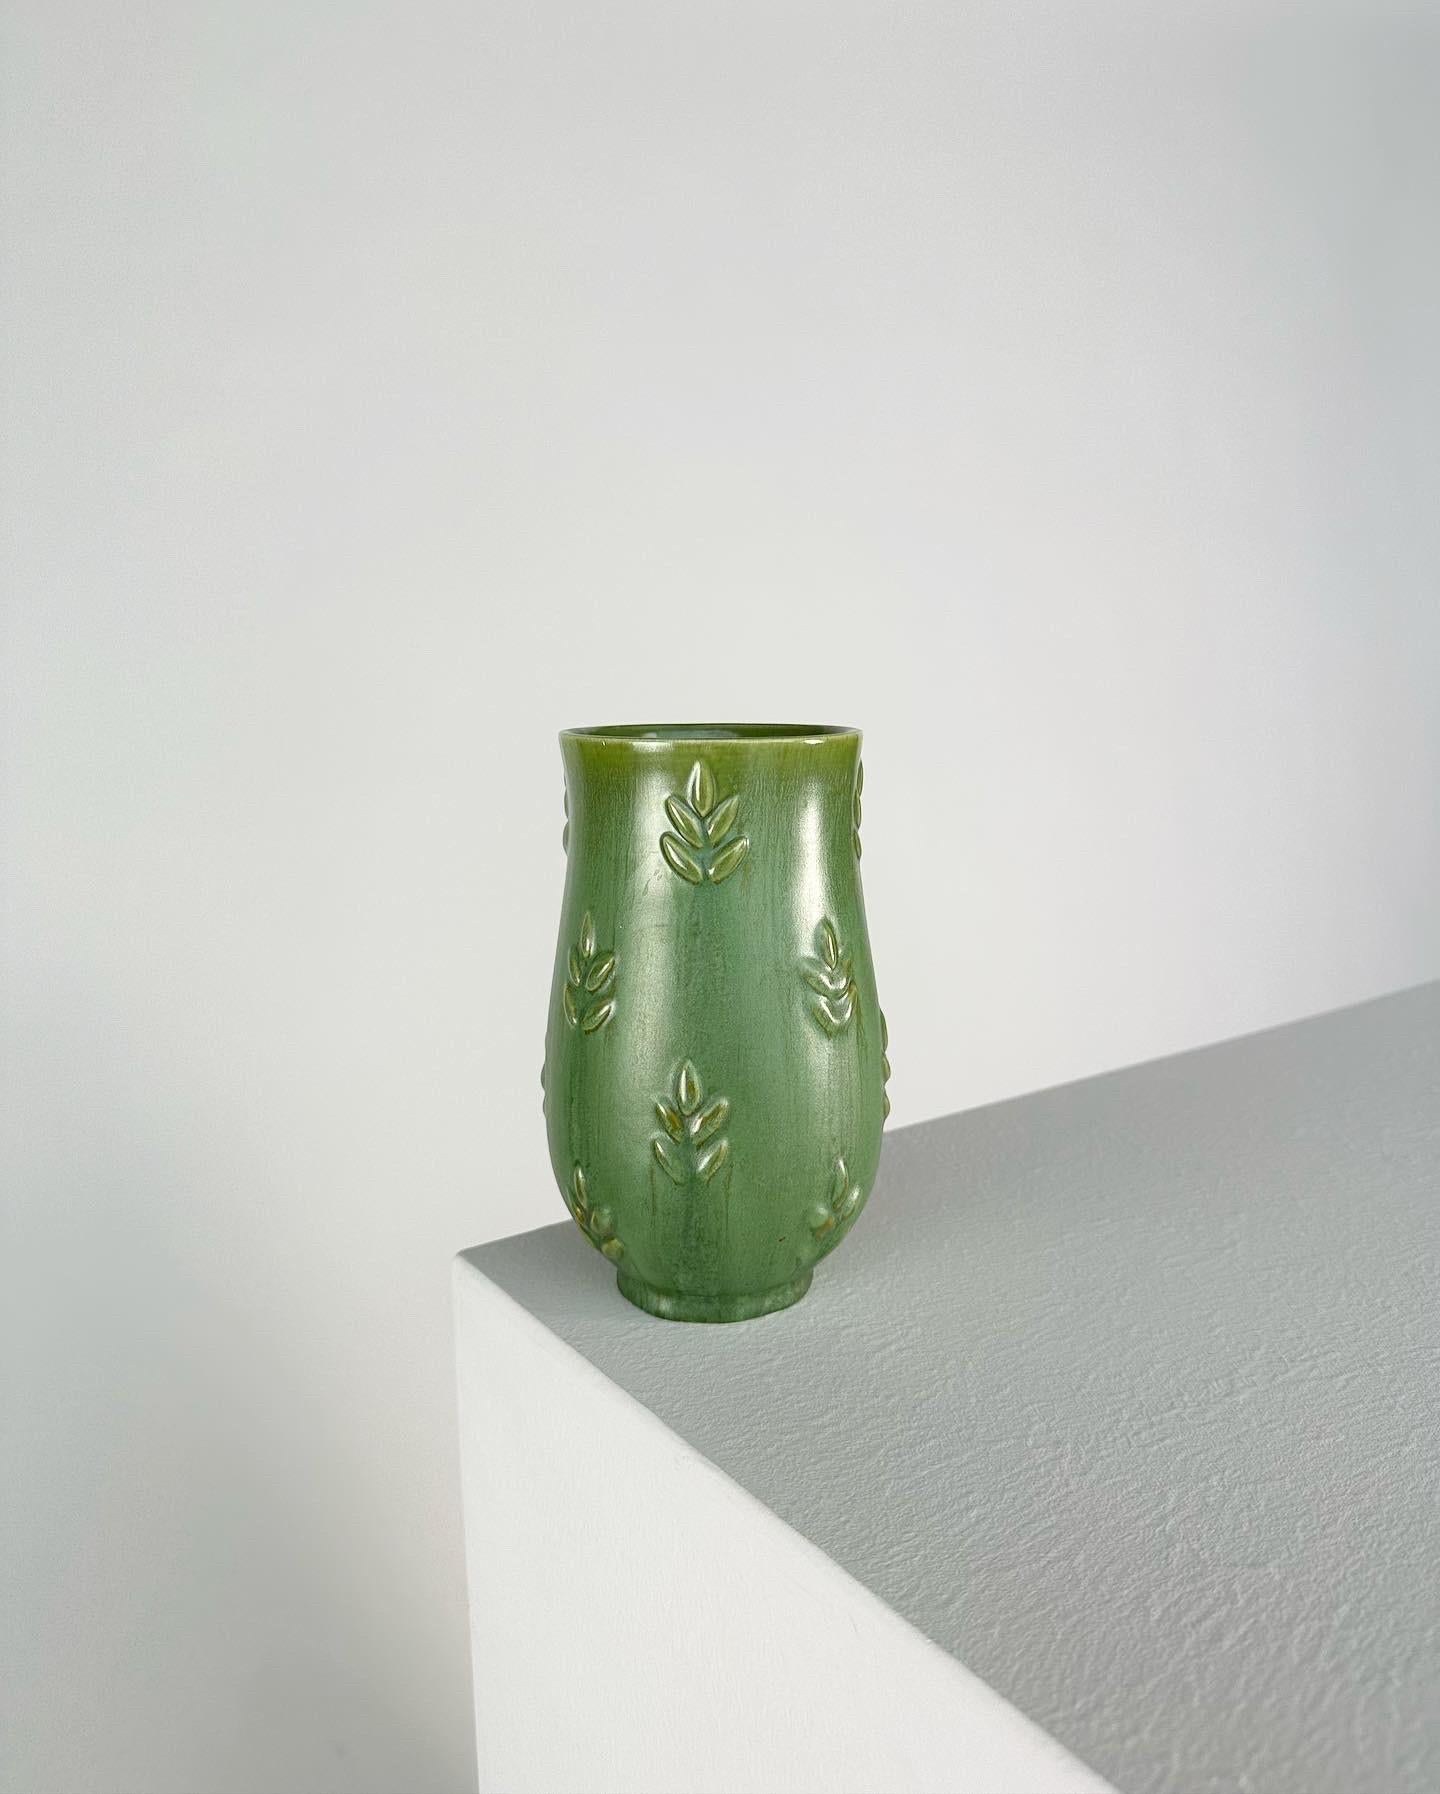 European Anna Lisa Thomson Vase Gefle Sweden Ceramic Relief Green, 1930s For Sale